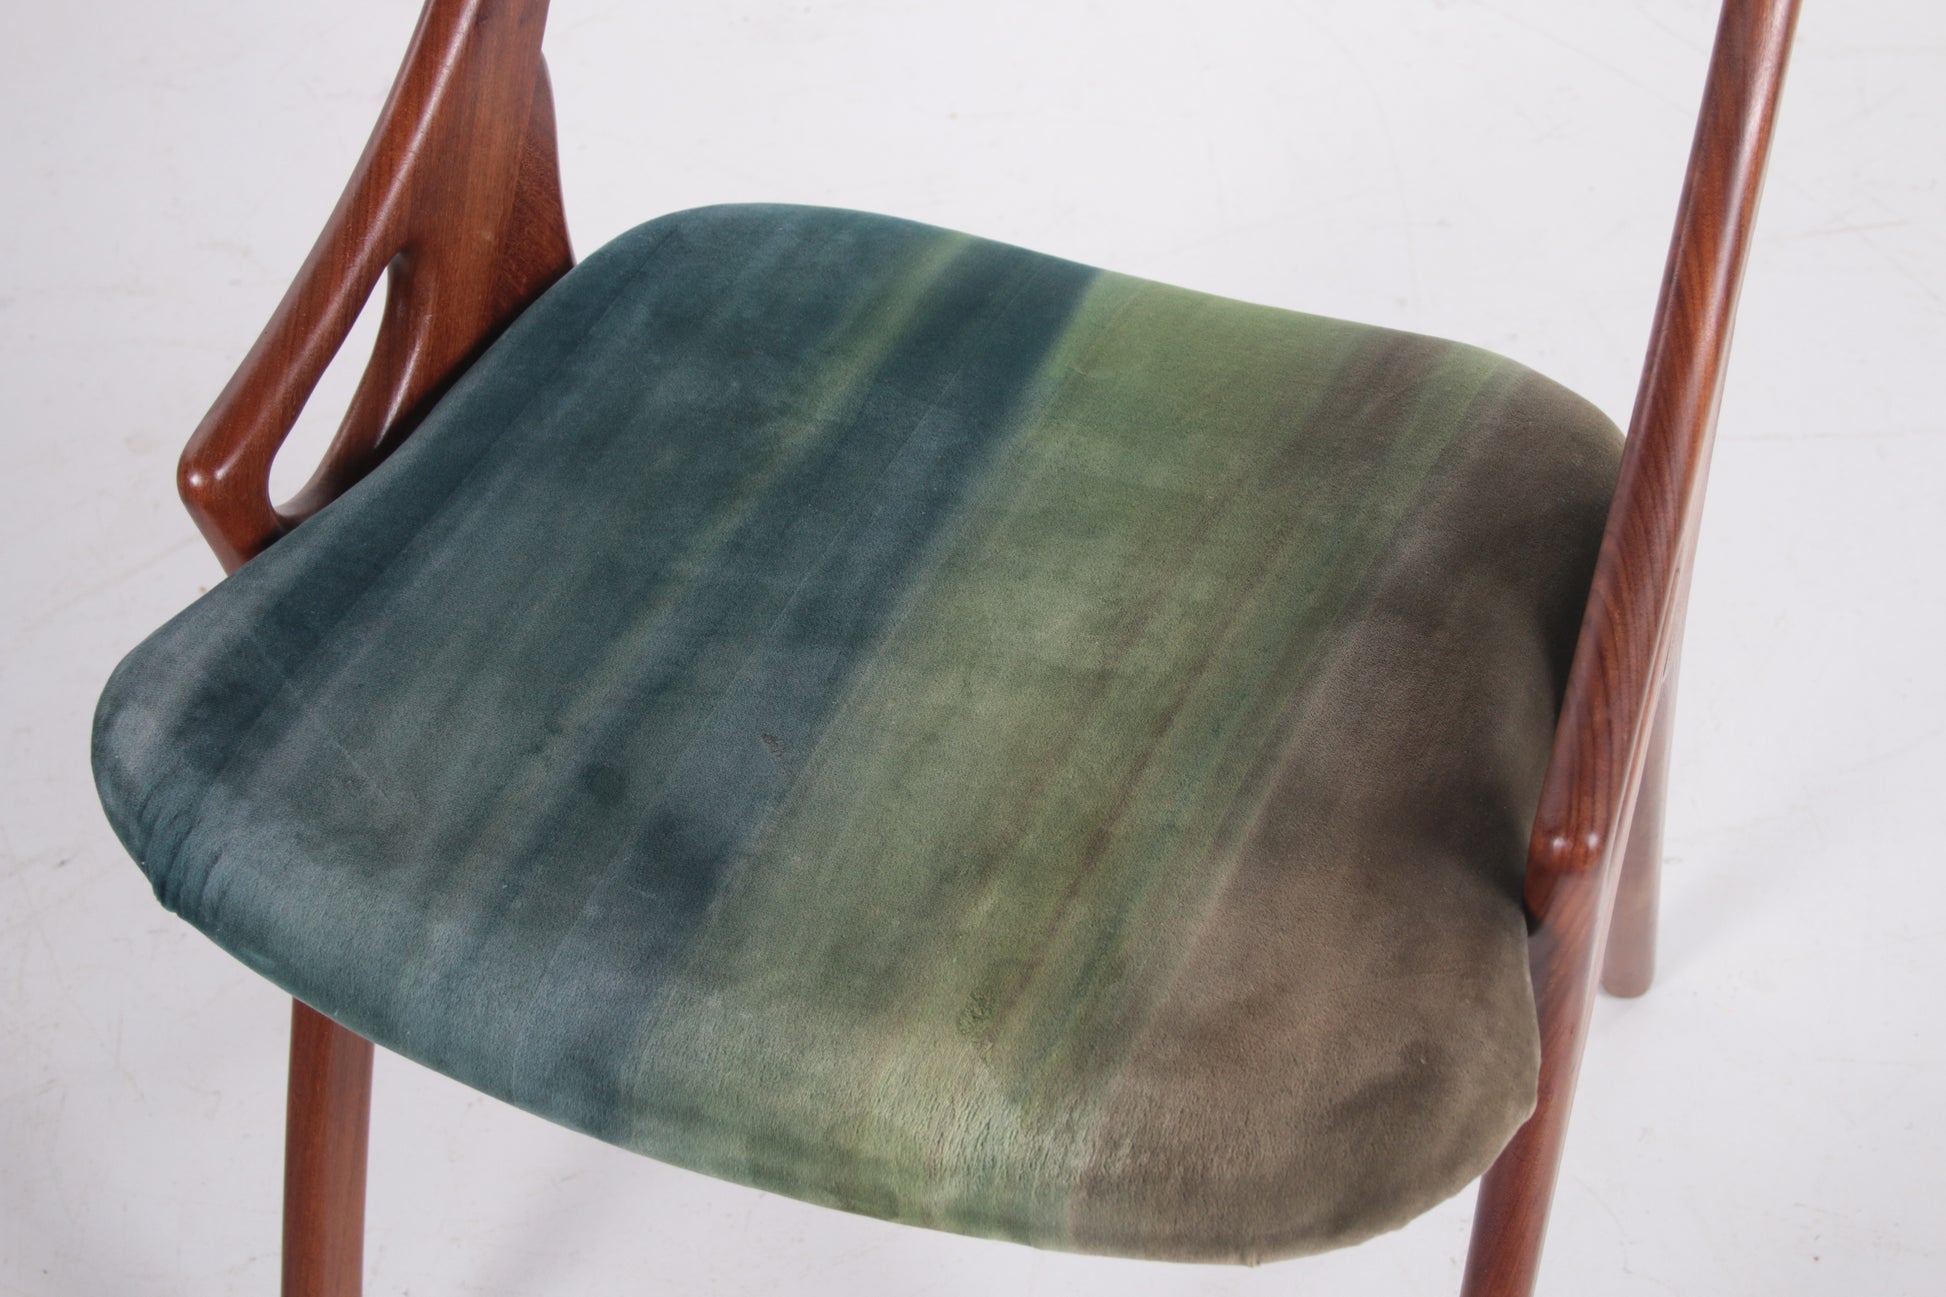 Mooie Set van 4 stoelen van Arne Hovmand Olsen voor Mogens kold jaren60 detail kussen